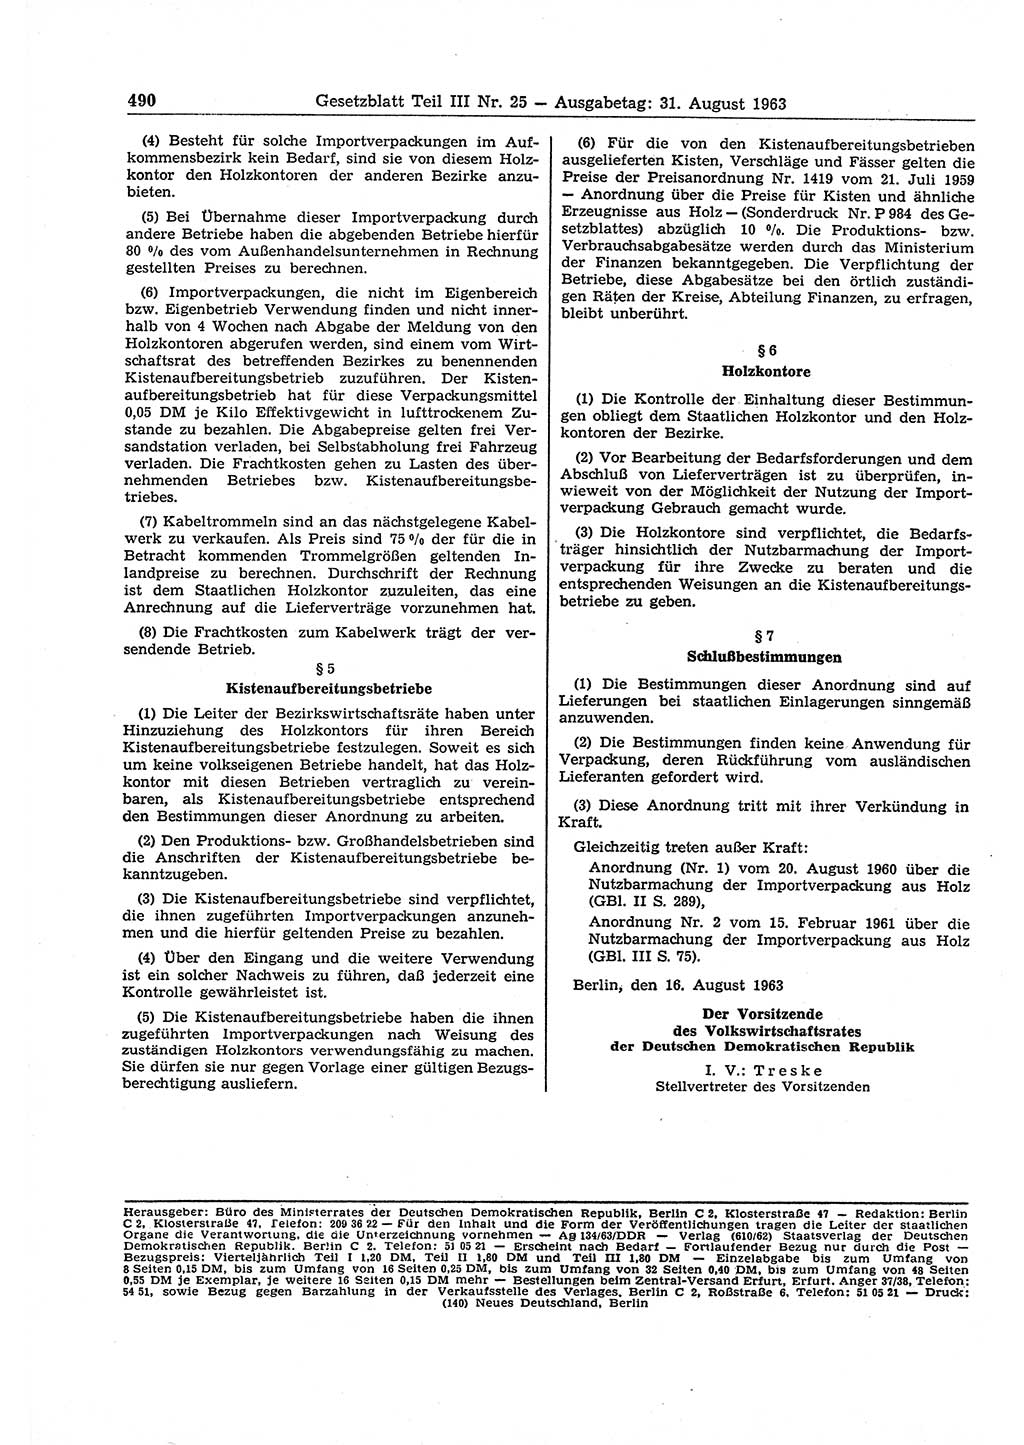 Gesetzblatt (GBl.) der Deutschen Demokratischen Republik (DDR) Teil ⅠⅠⅠ 1963, Seite 490 (GBl. DDR ⅠⅠⅠ 1963, S. 490)